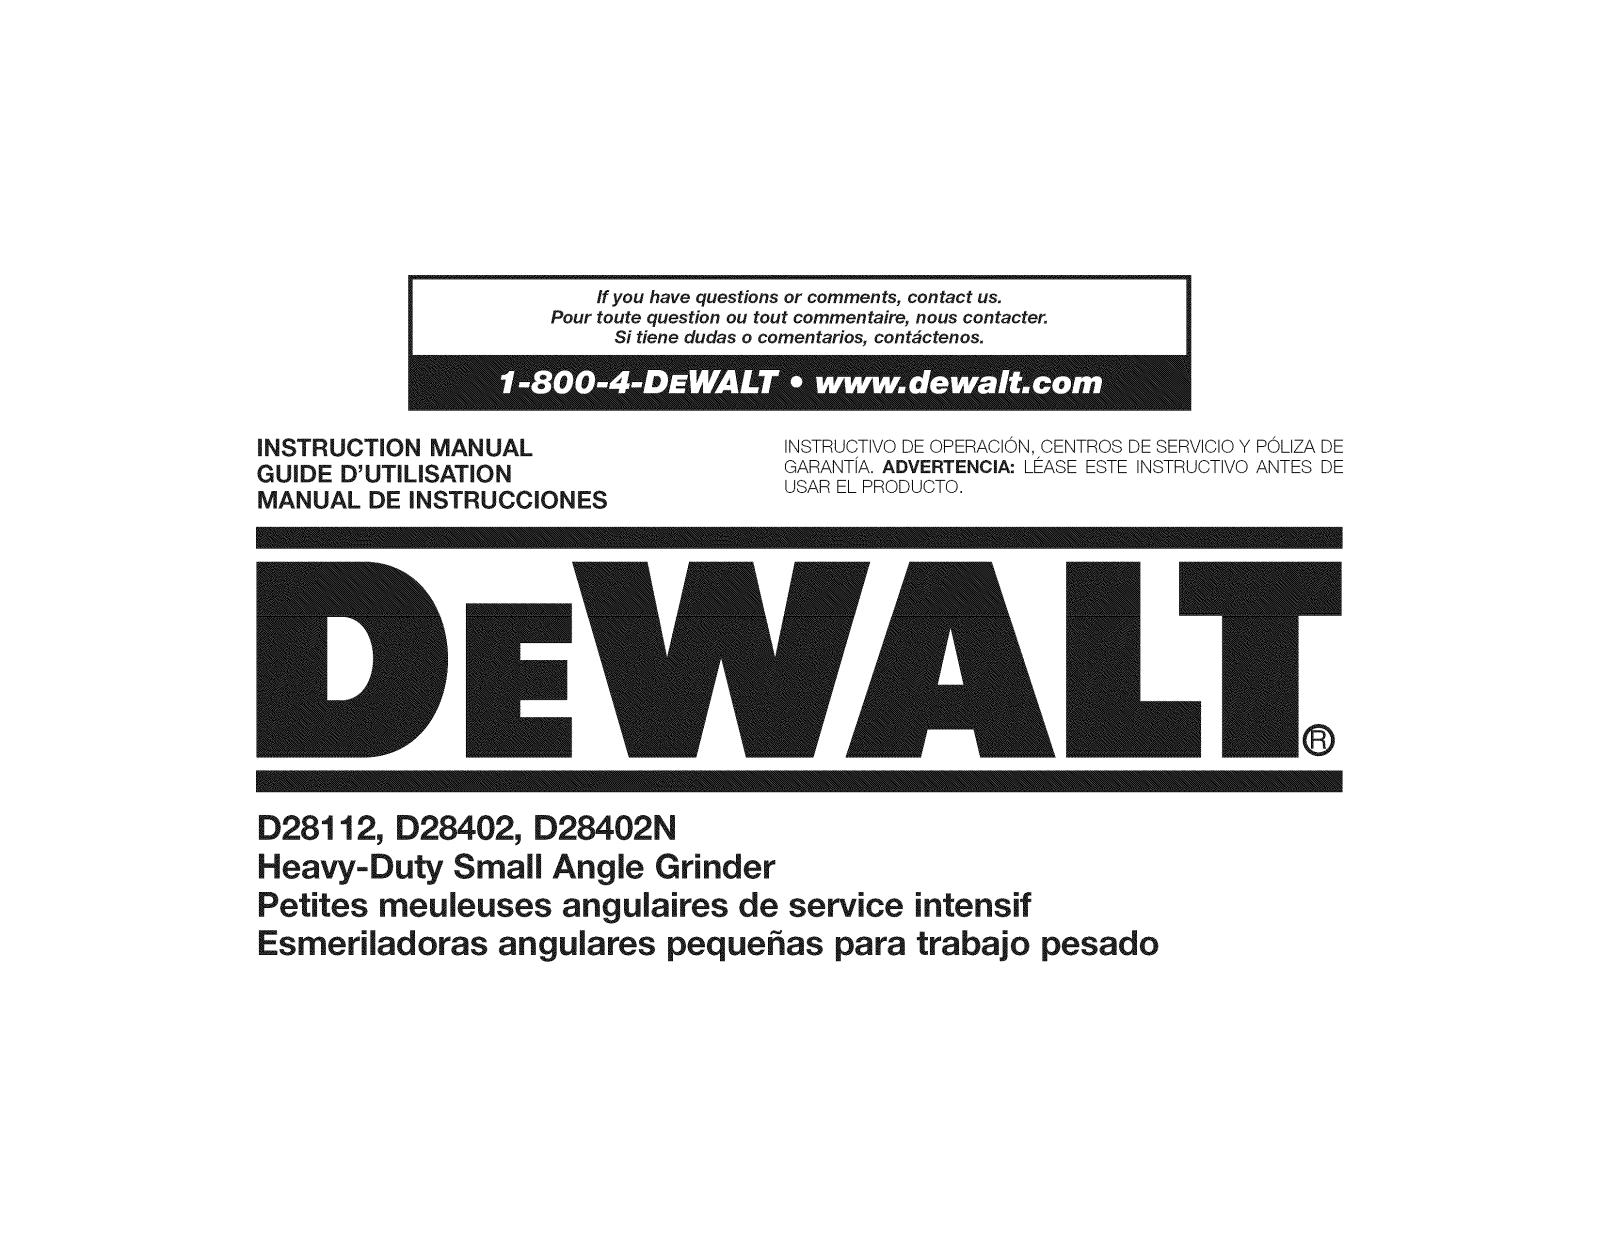 DeWalt D28402N TYPE 2 Owner’s Manual